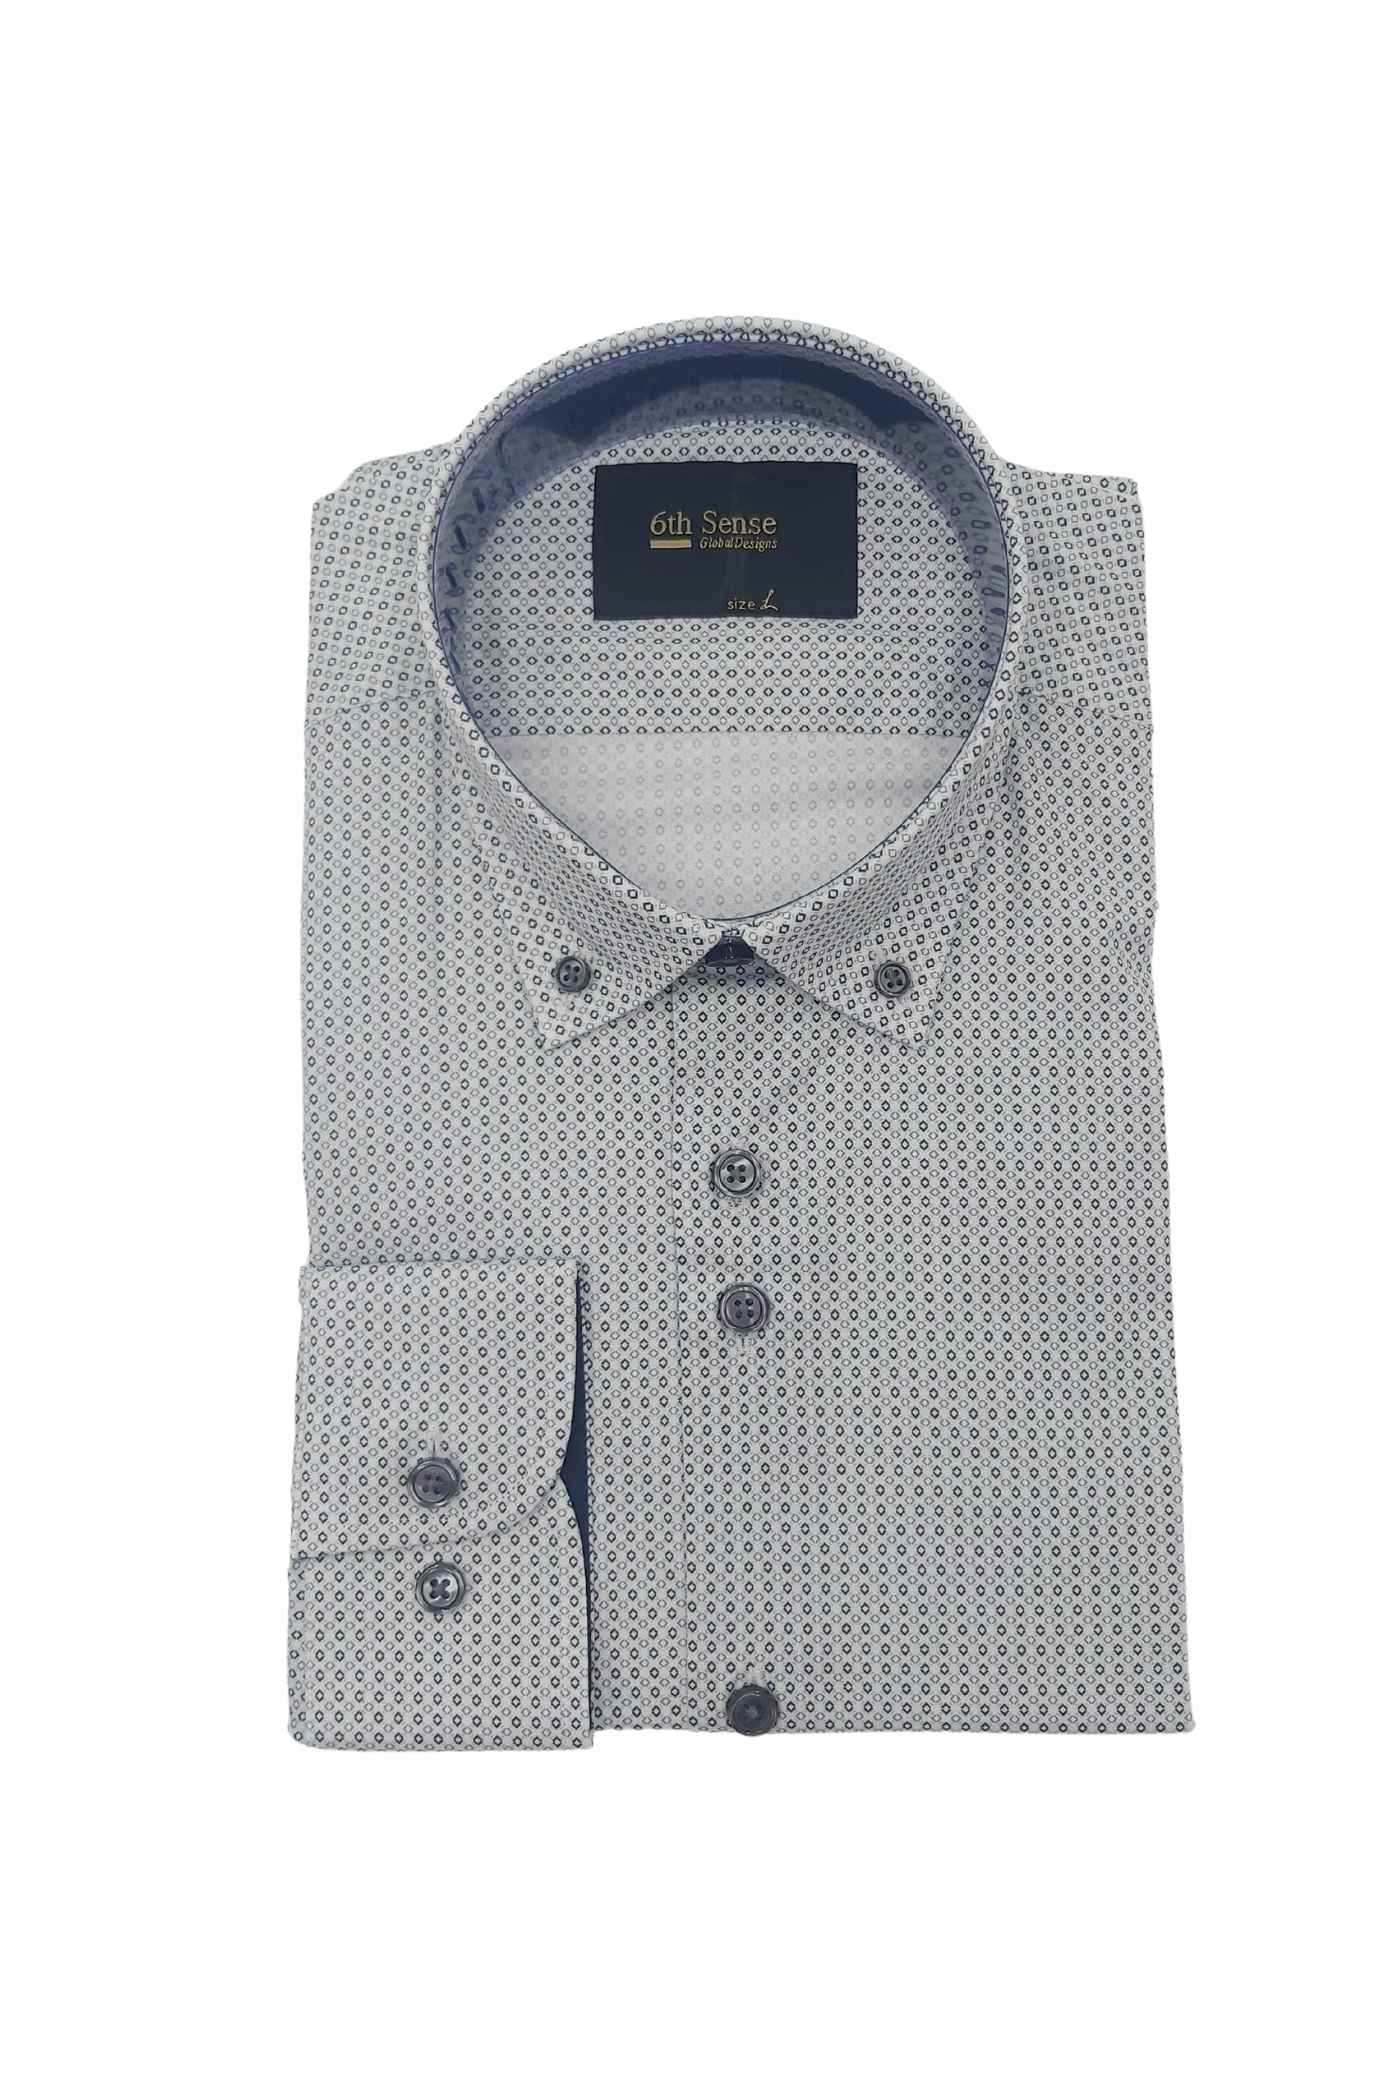 Men's Button Down Grey/Black Diamond Print Shirt-Front View